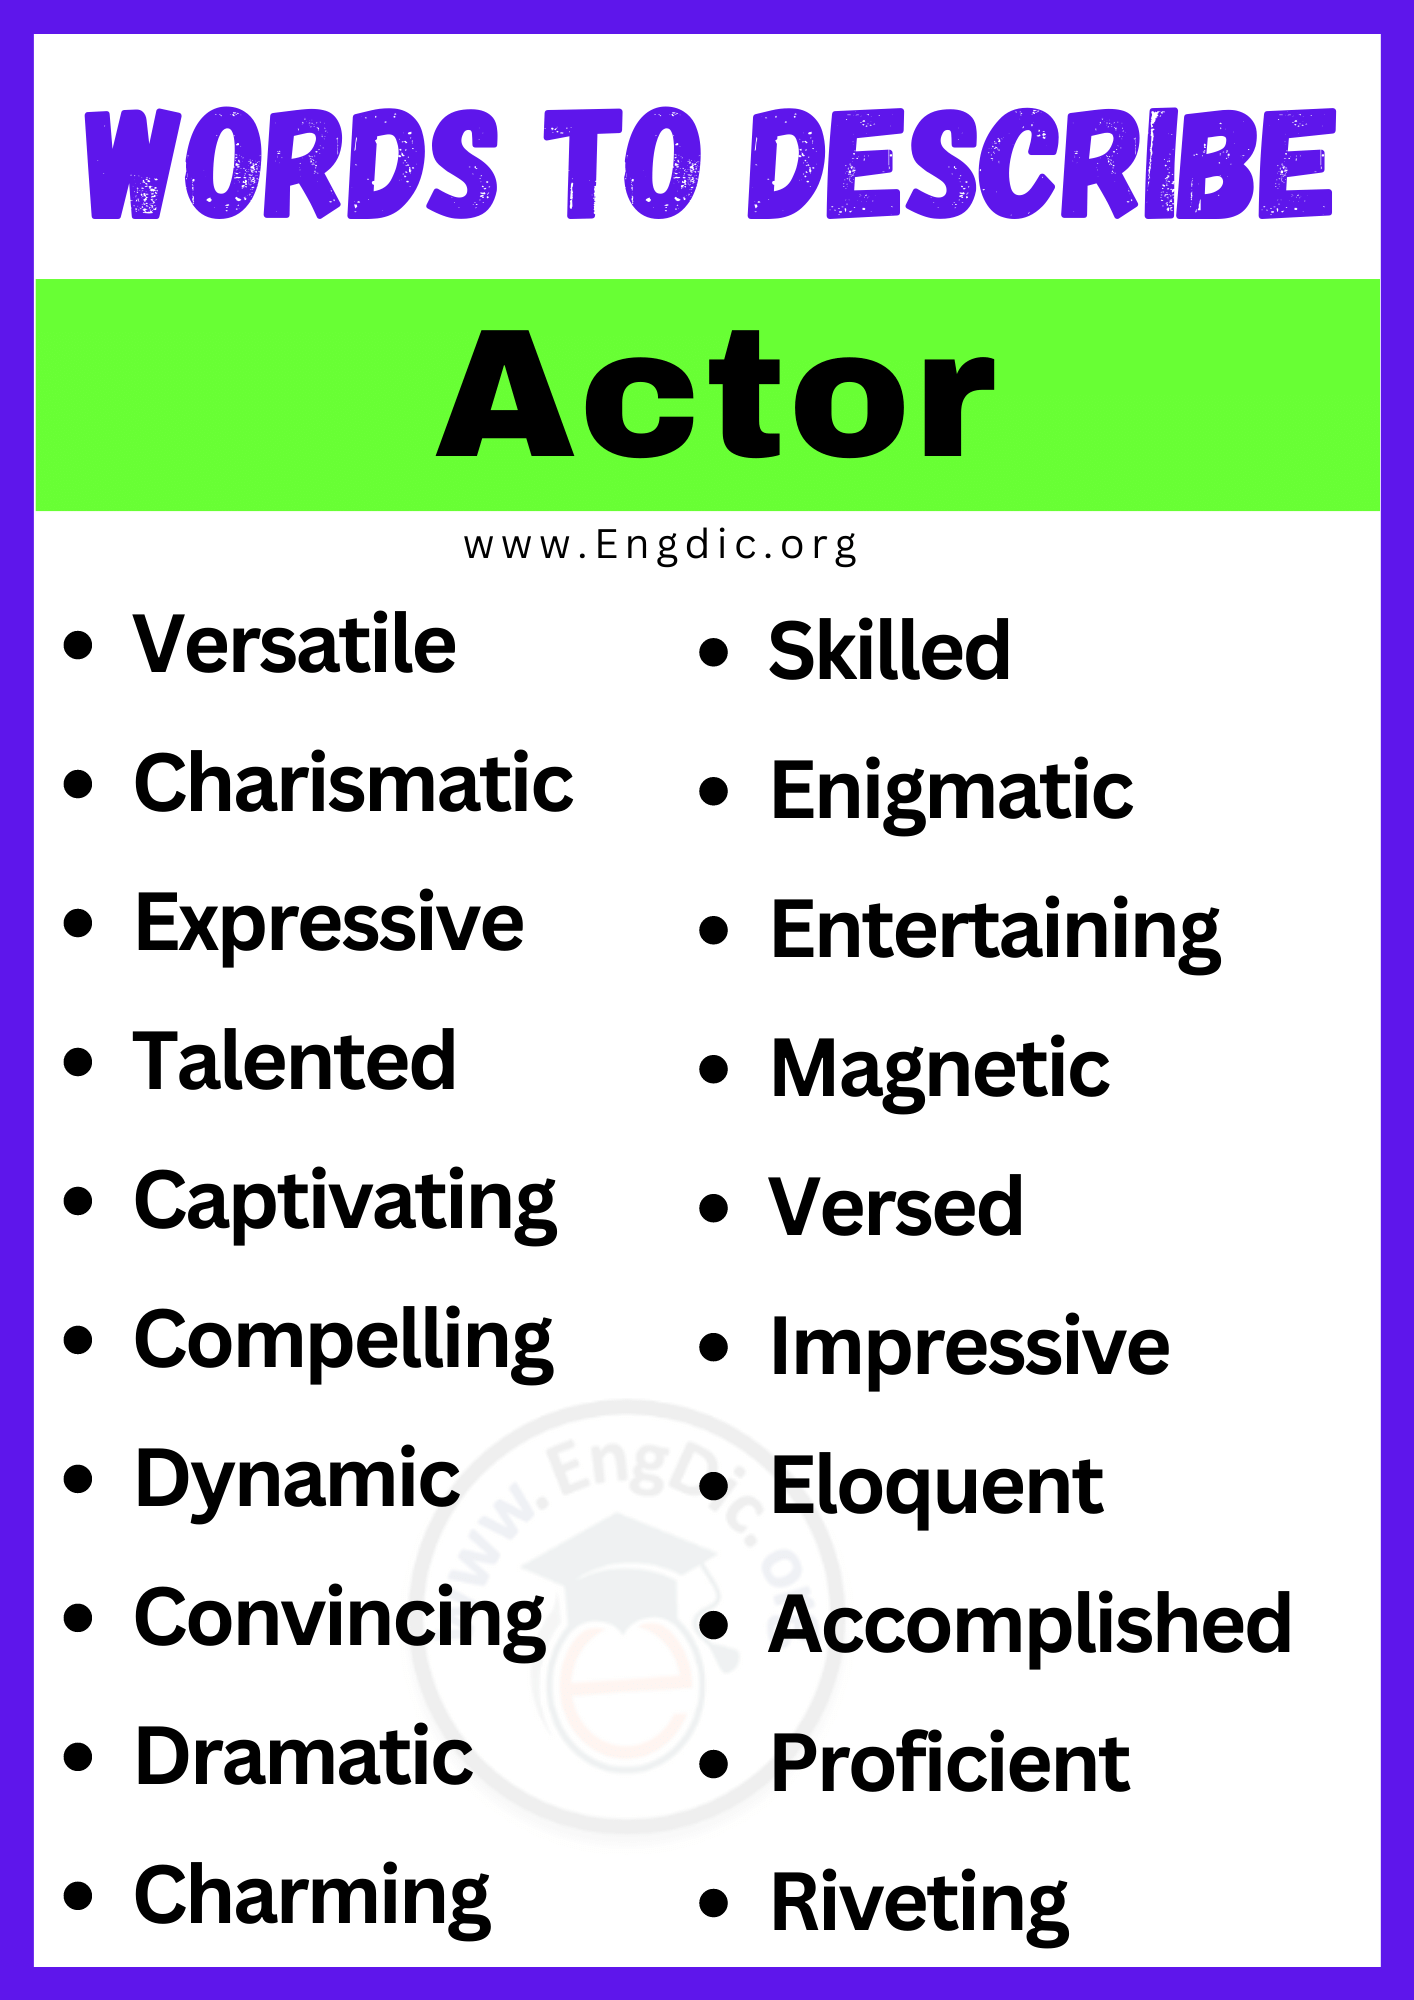 Words to Describe Actor